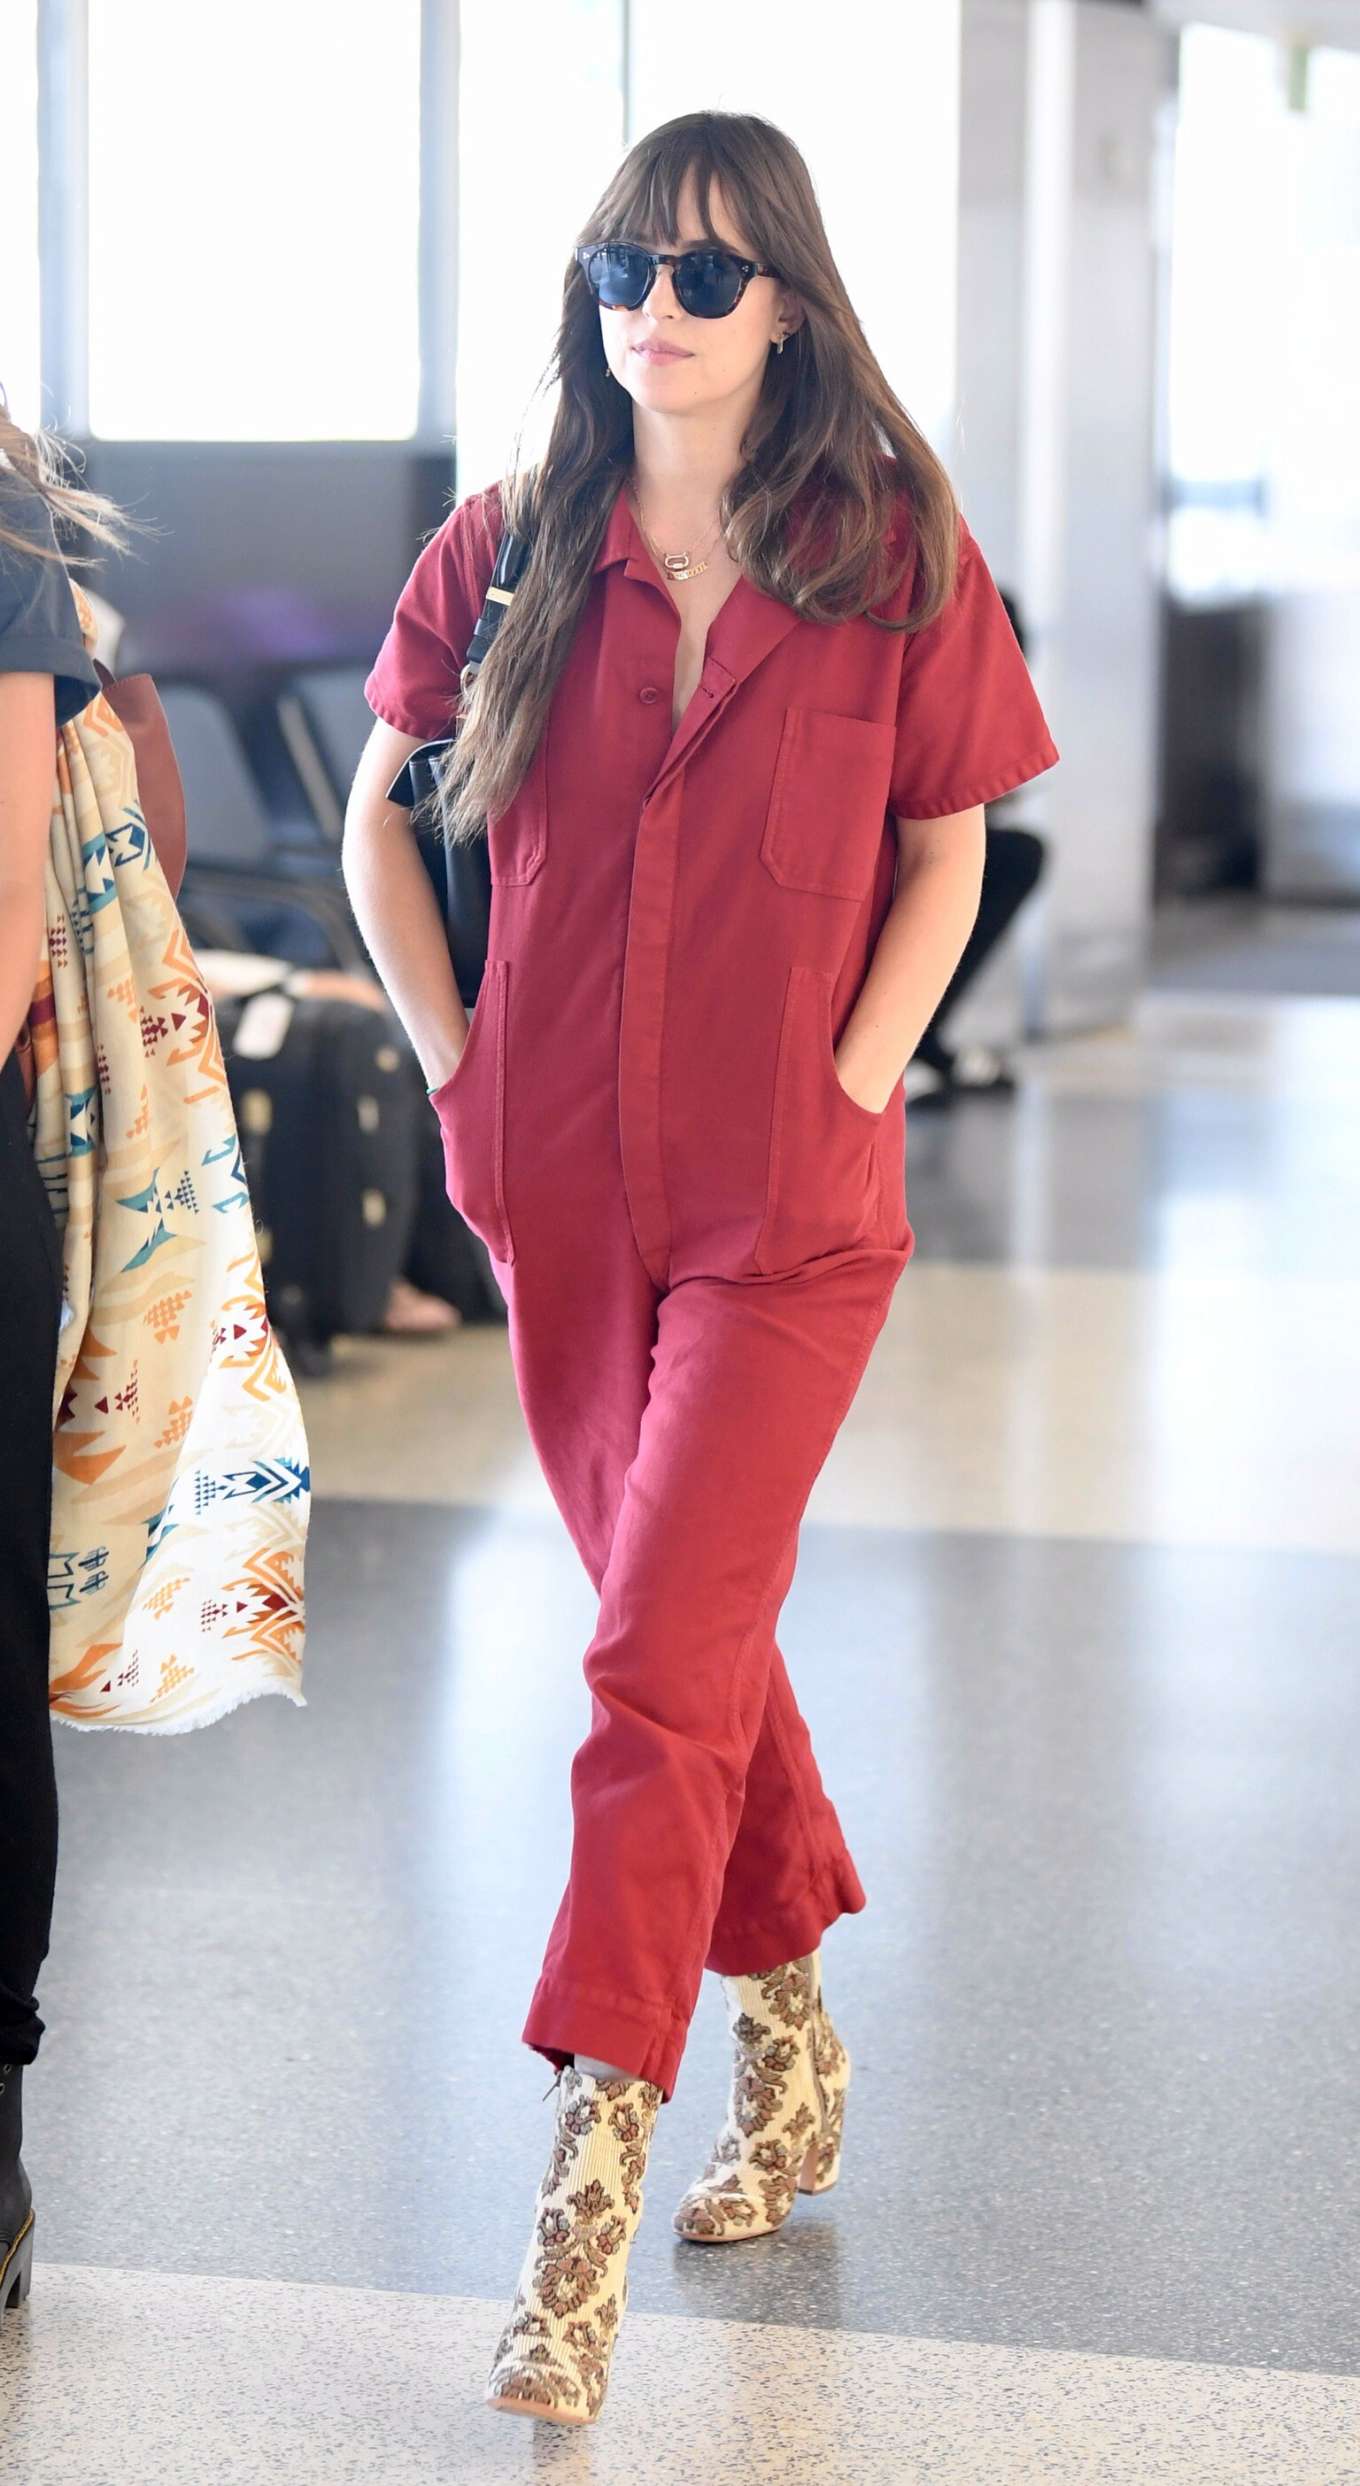 Dakota Johnson 2019 : Dakota Johnson in Red Jumpsuit-04